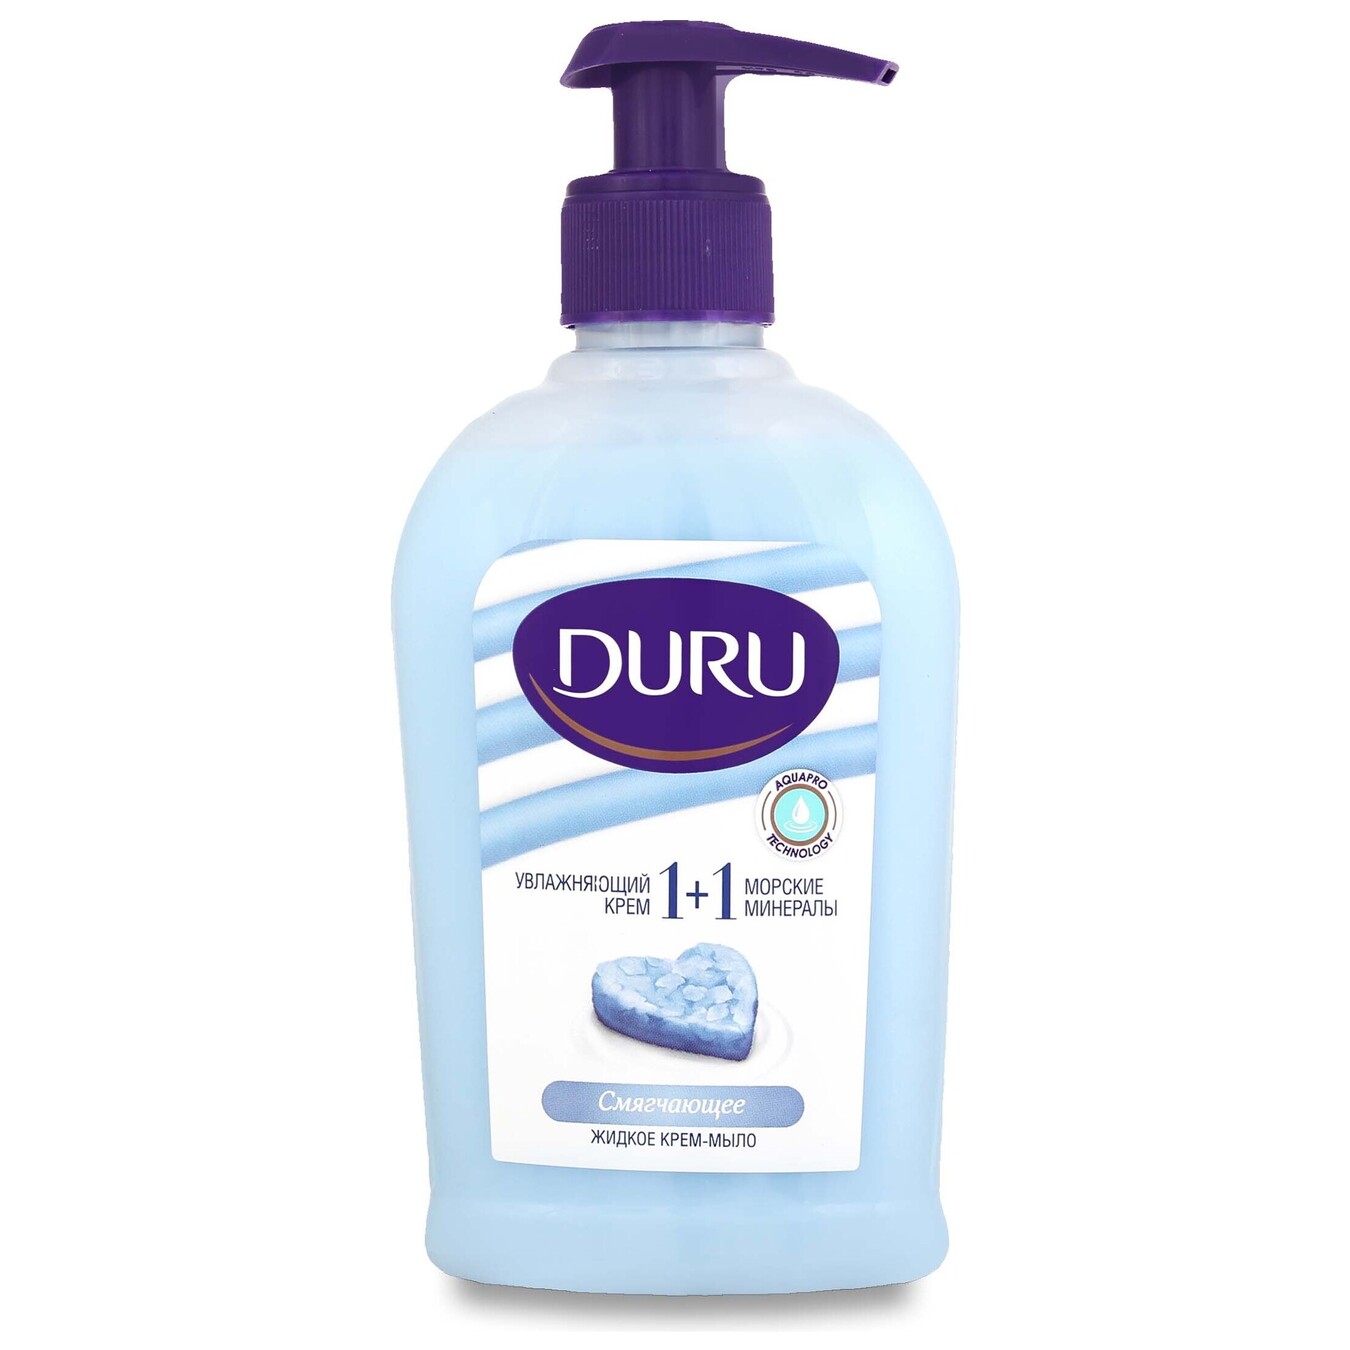 Жидкое мыло Duru 1+1 крем и морские минералы 300мл